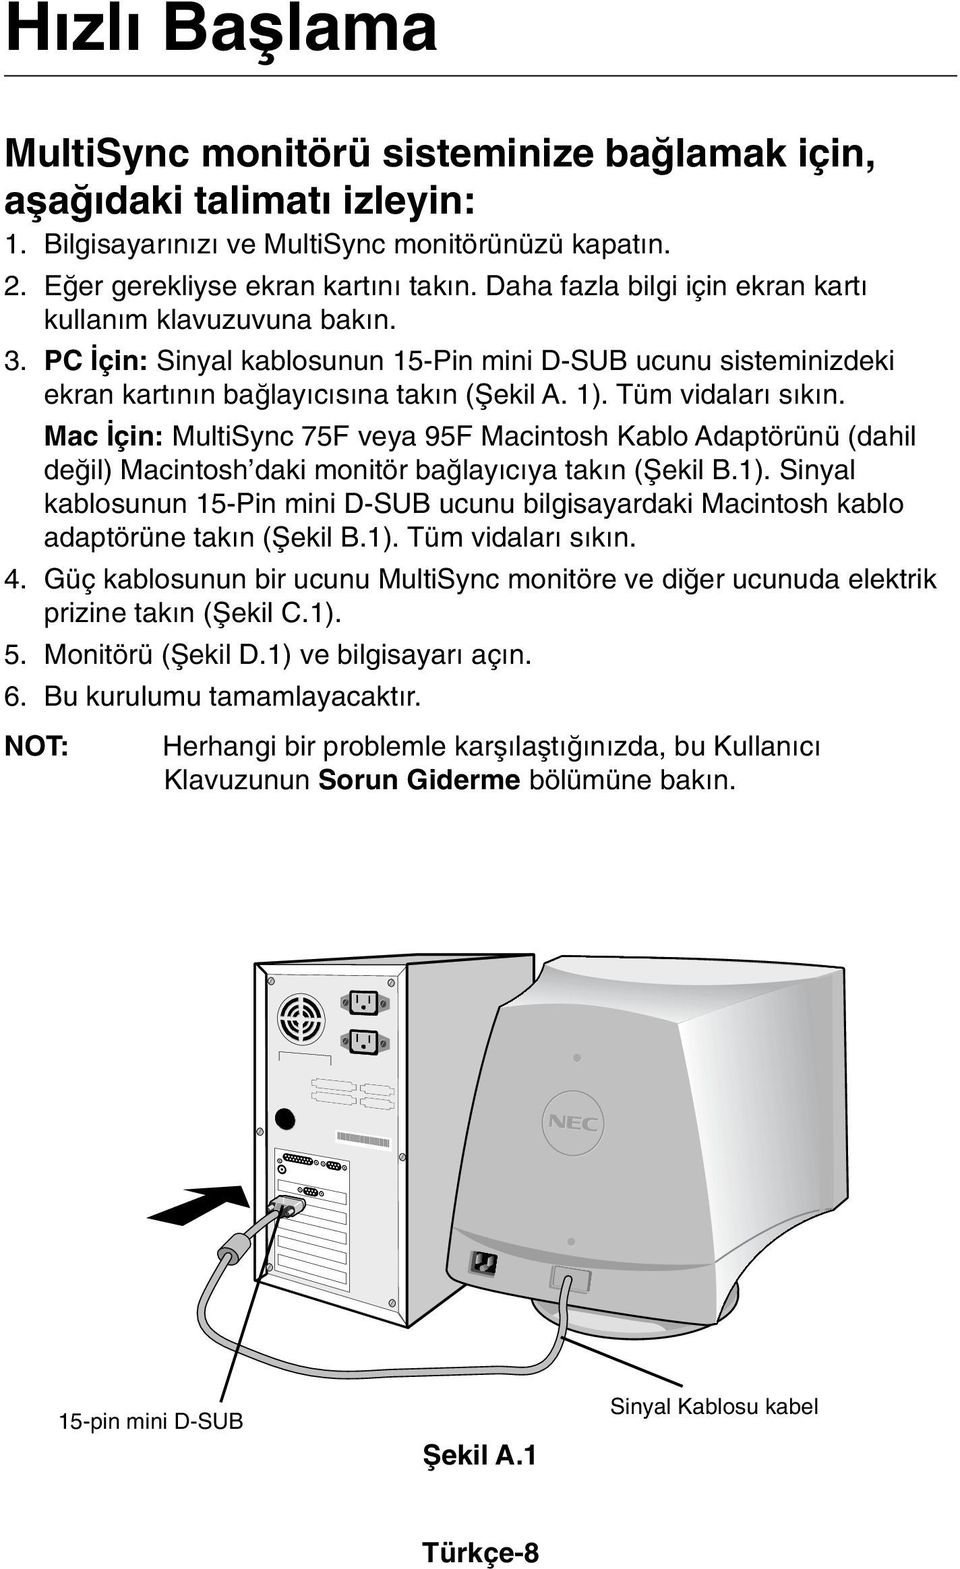 Mac çin: MultiSync 75F veya 95F Macintosh Kablo Adaptörünü (dahil deπil) Macintosh daki monitör baπlay c ya tak n (Ωekil B.1).